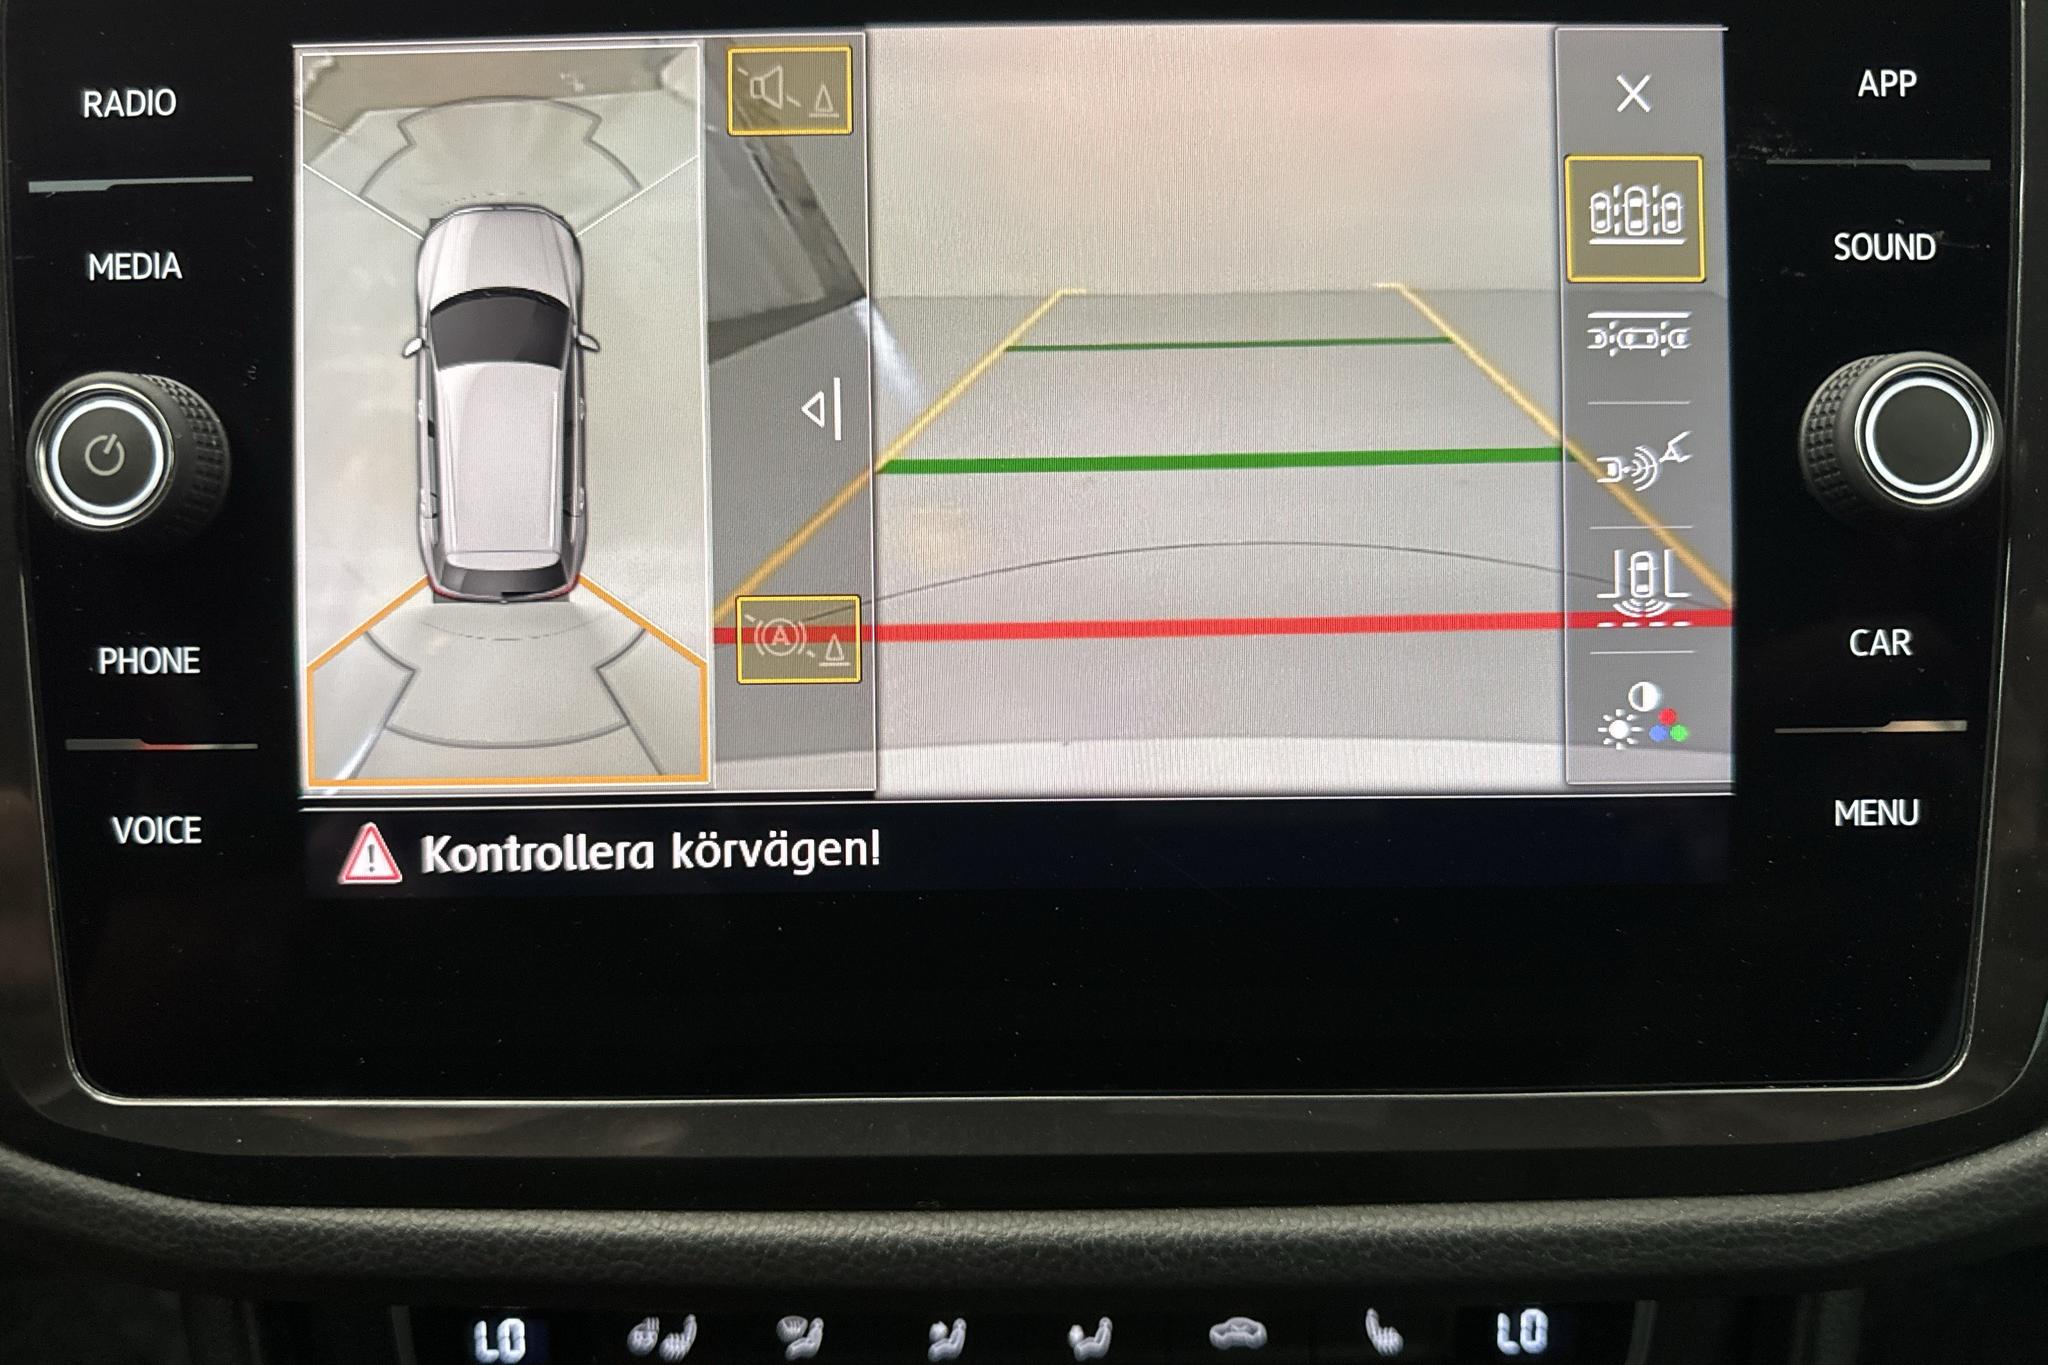 VW Tiguan 1.4 TSI 4MOTION (150hk) - 73 030 km - Automatyczna - biały - 2018